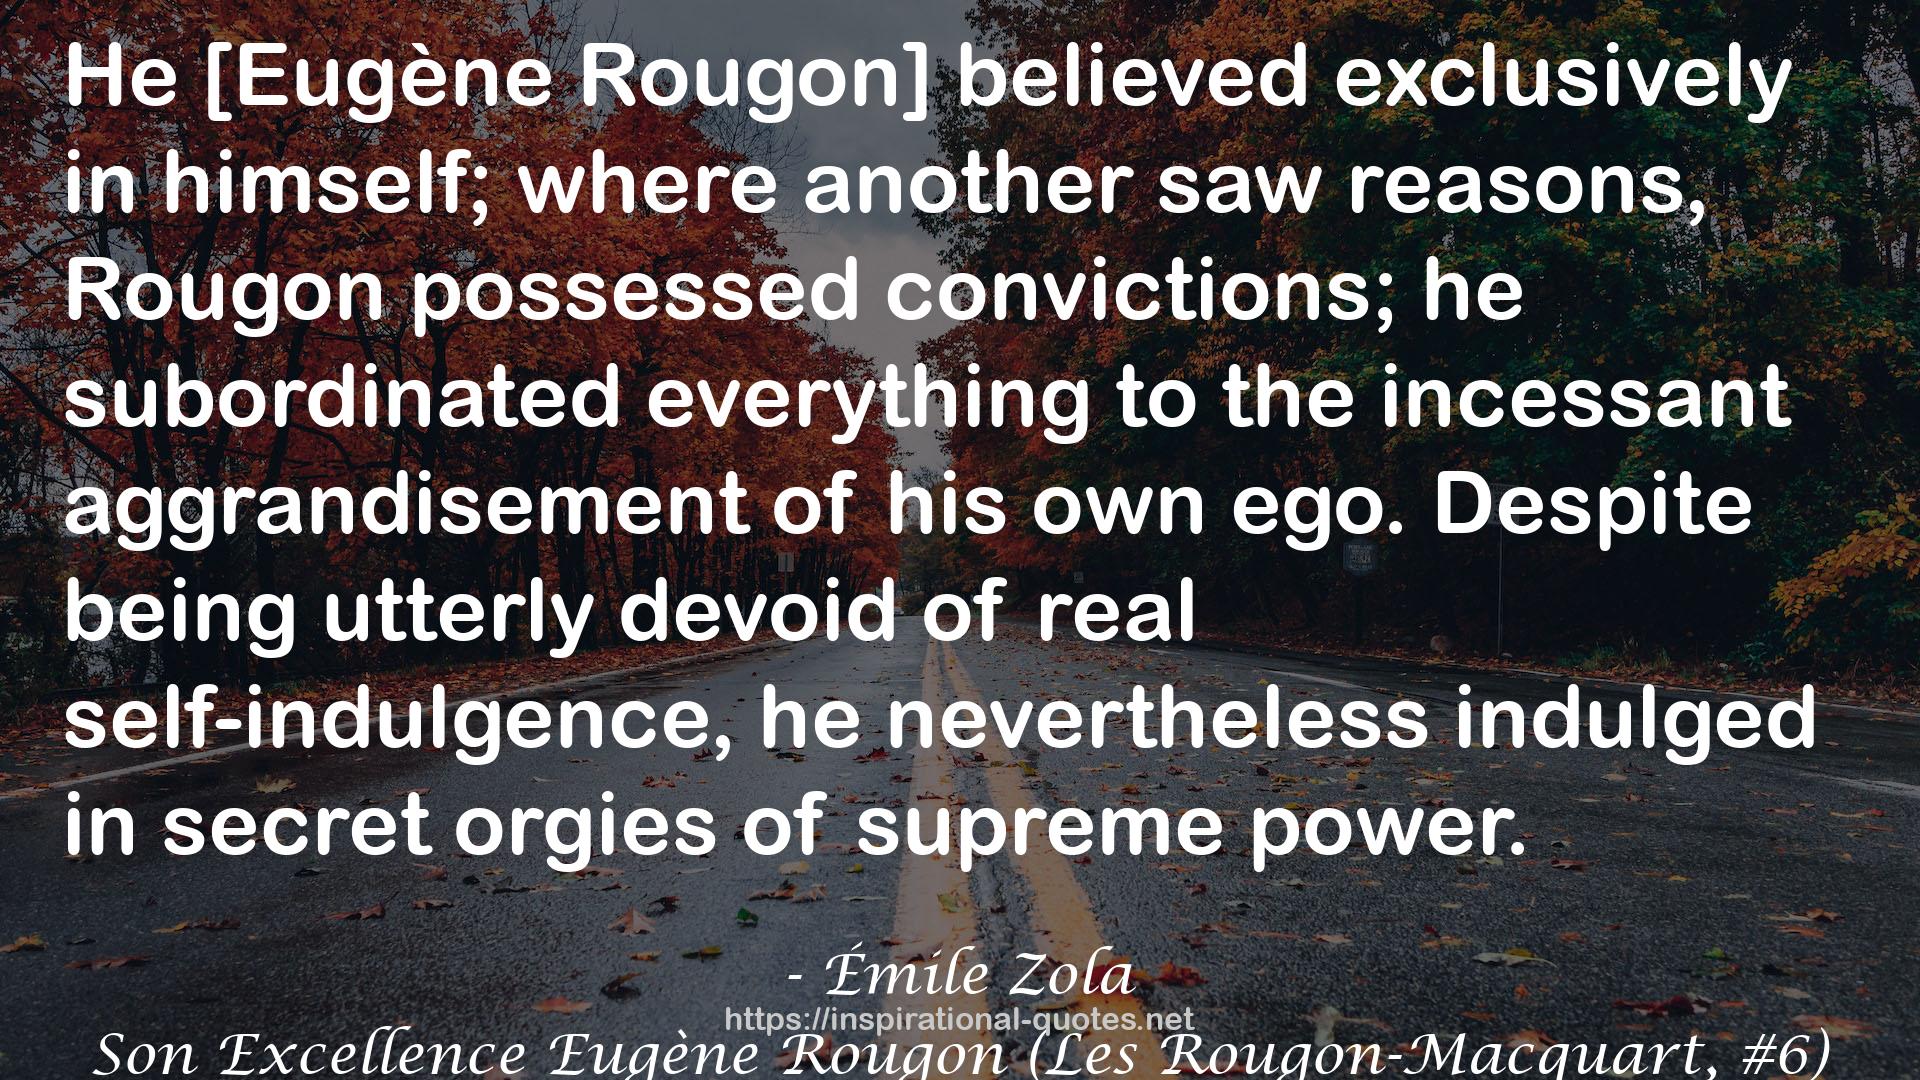 Son Excellence Eugène Rougon (Les Rougon-Macquart, #6) QUOTES